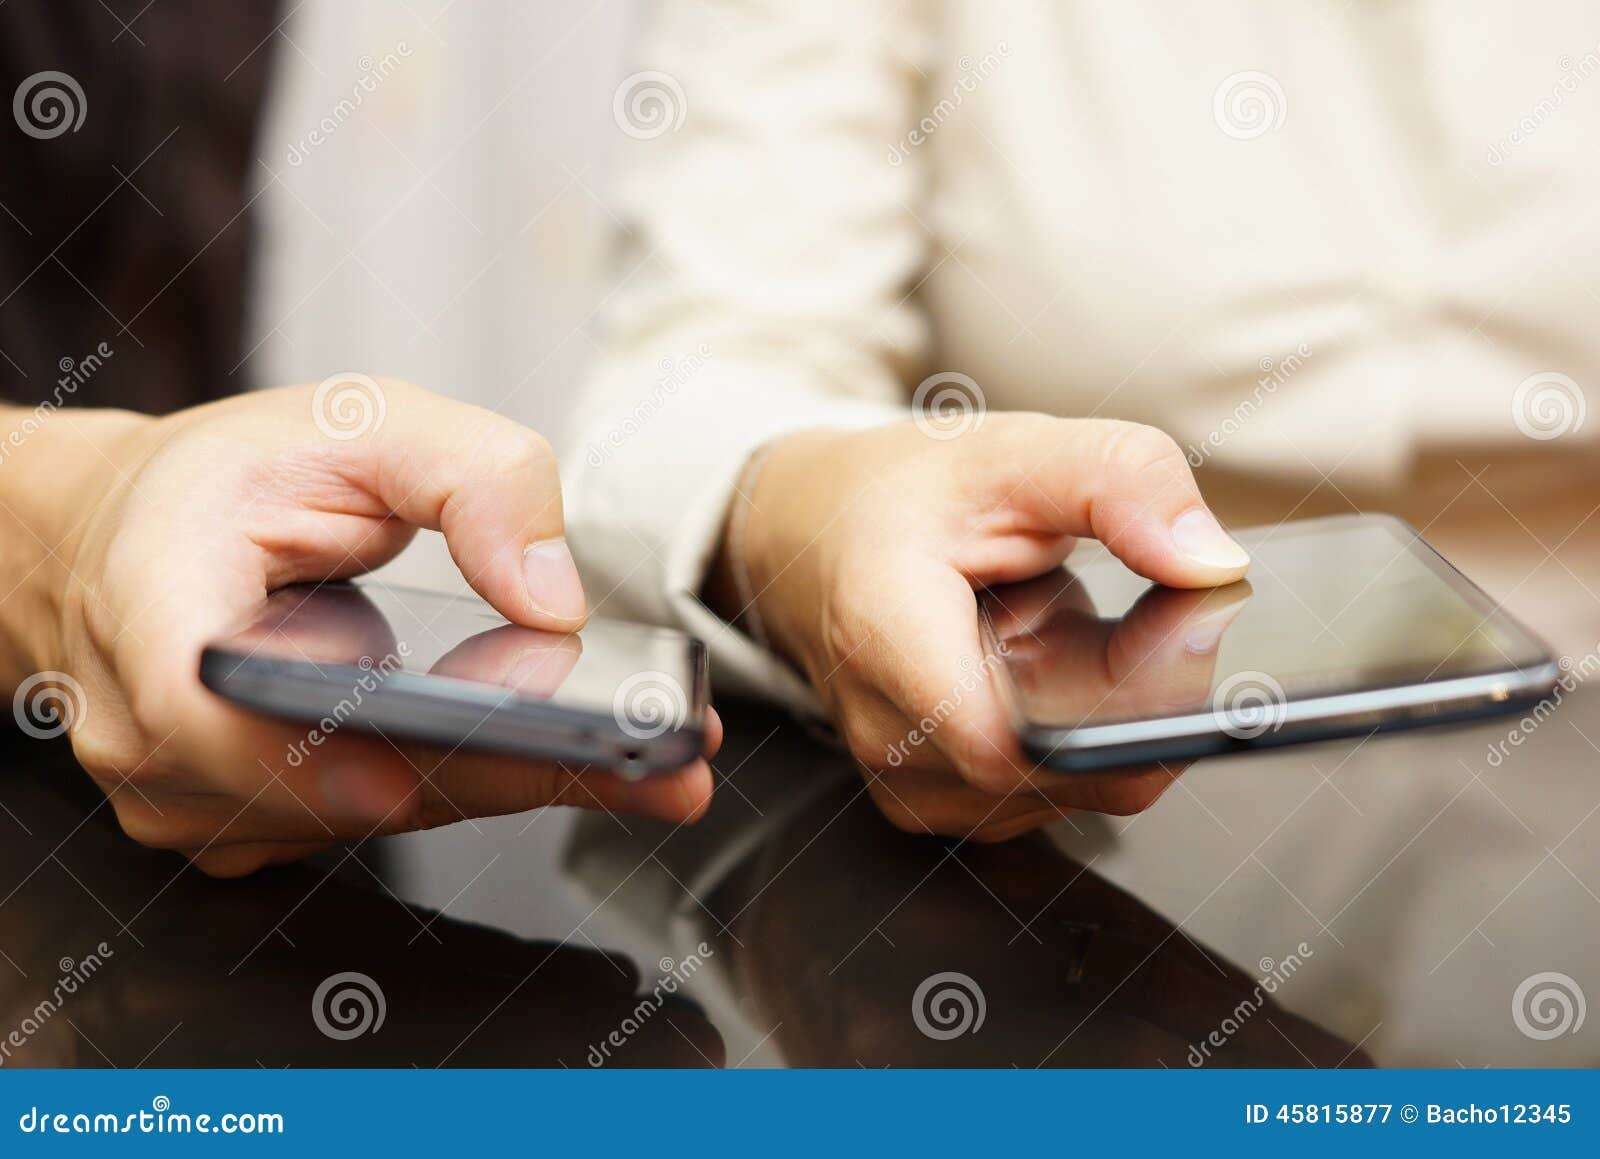 halfgeleider Oh Bang om te sterven Twee Personen Vergelijken Slimme Mobiele Telefoons Stock Afbeelding - Image  of handvat, telefoon: 45815877